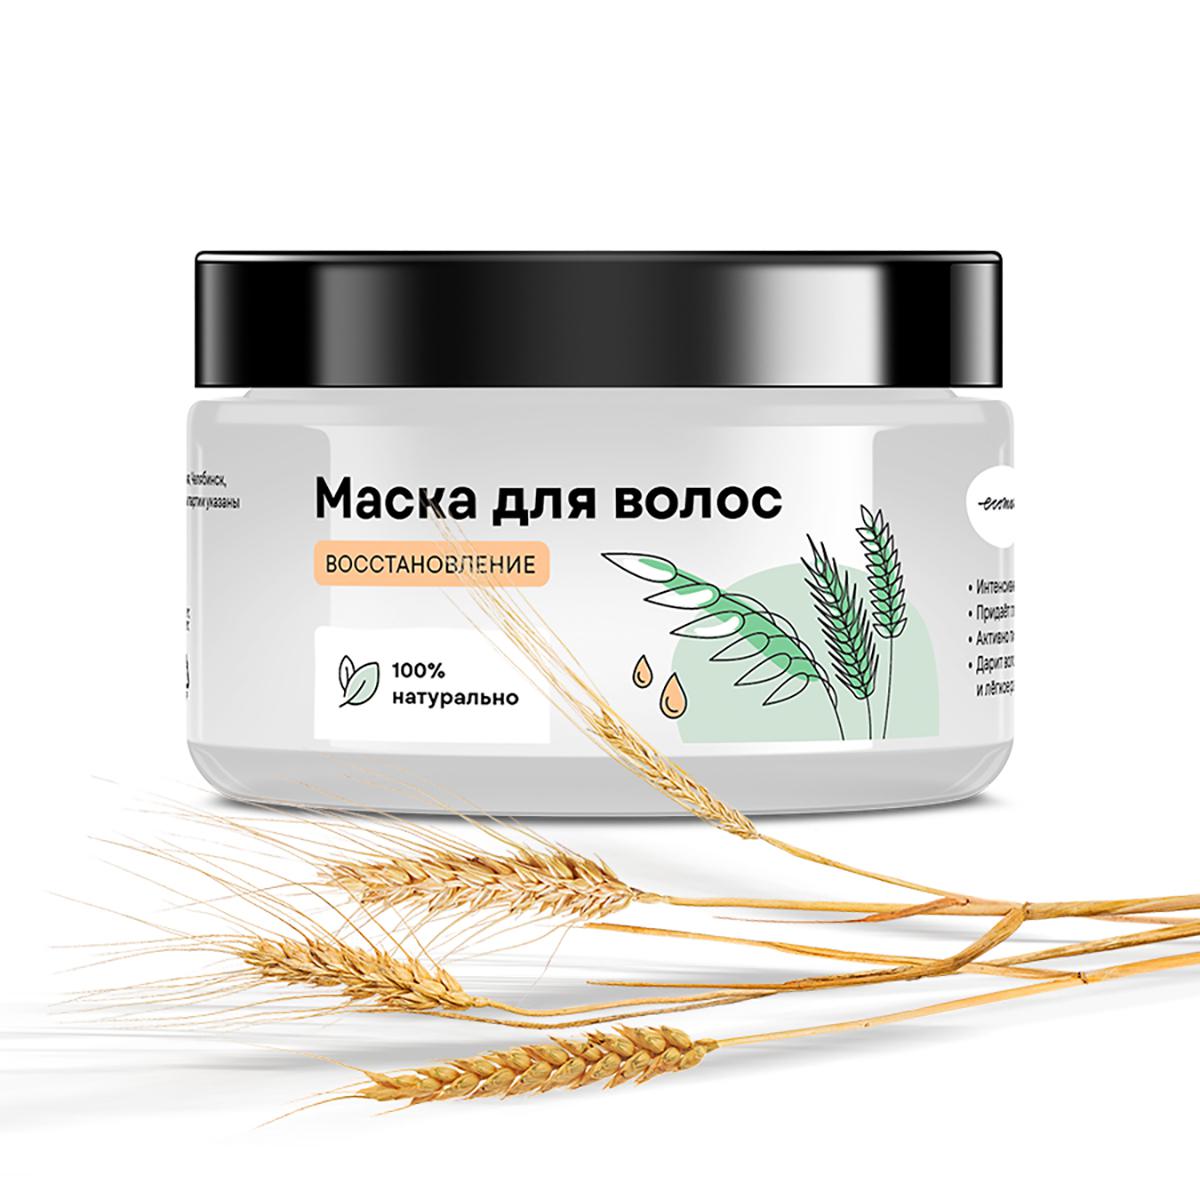 Маска для волос &laquo;Восстановление&raquo;, Ecomake, 490 руб. (ecomake.ru)